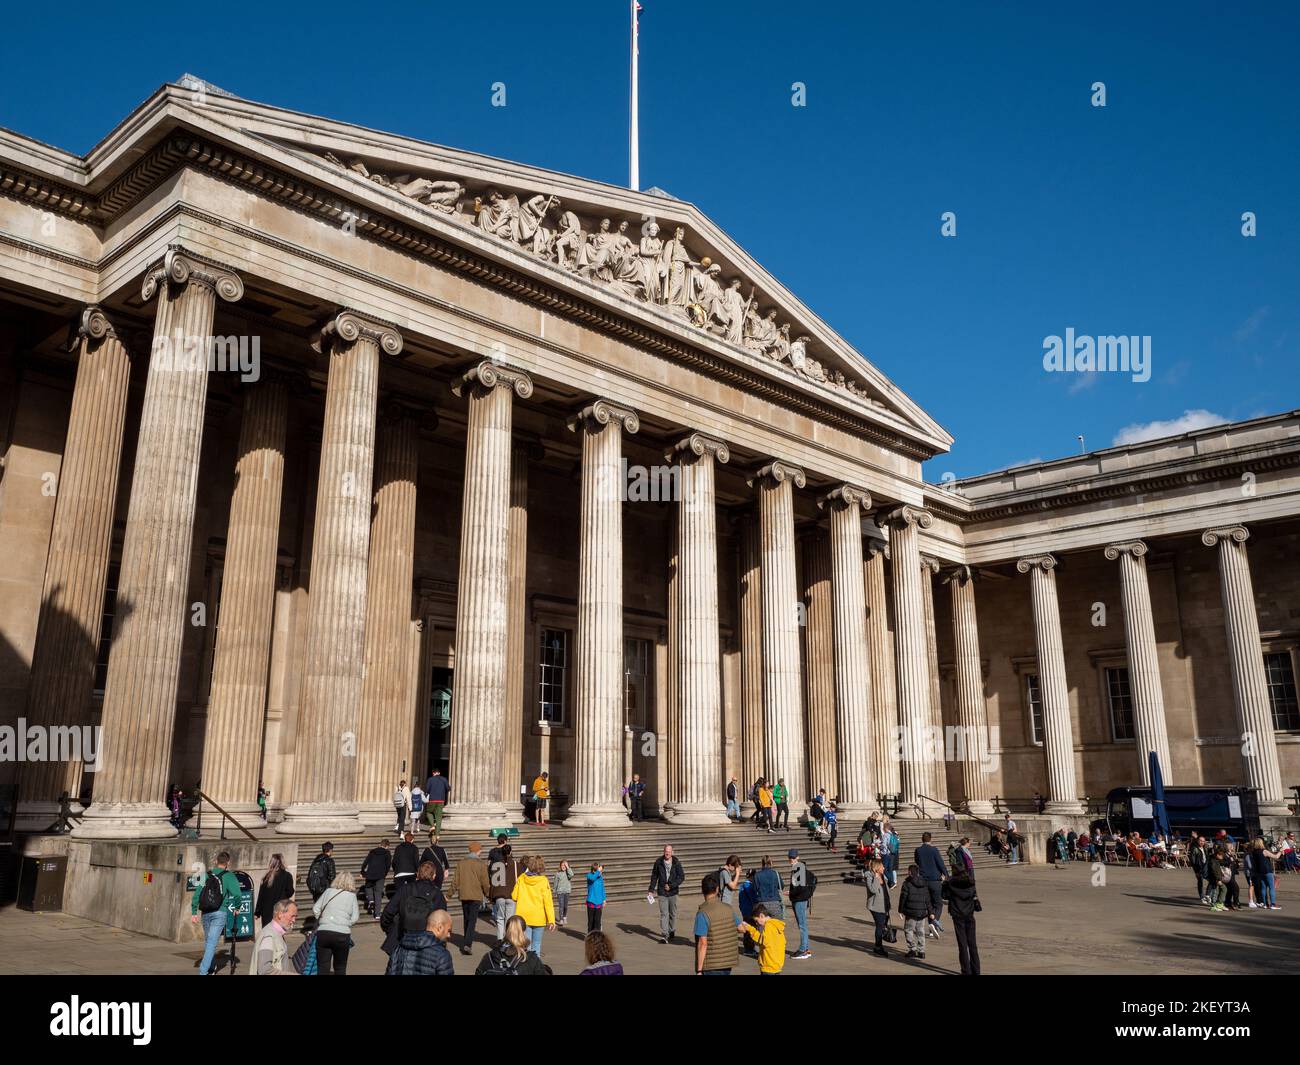 Entrée au British Museum, Londres, Angleterre, Royaume-Uni Banque D'Images